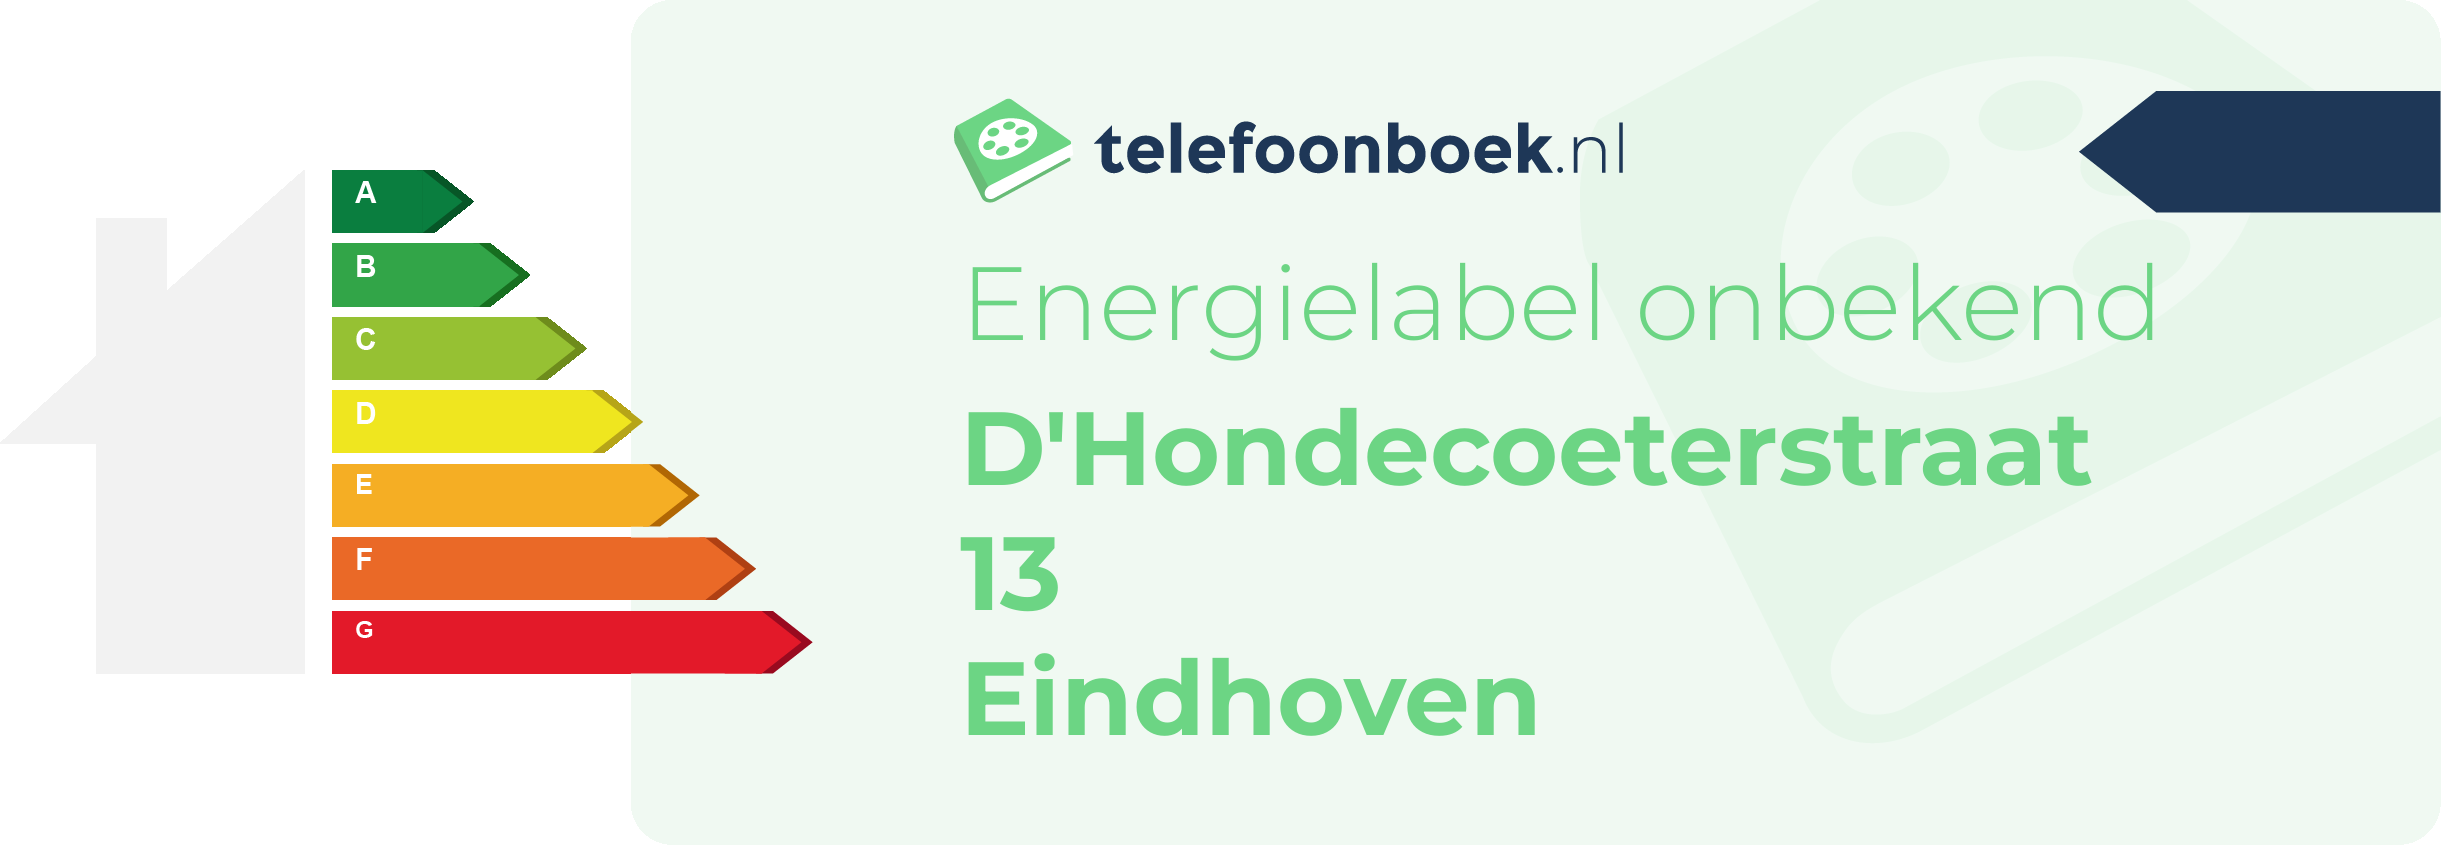 Energielabel D'Hondecoeterstraat 13 Eindhoven